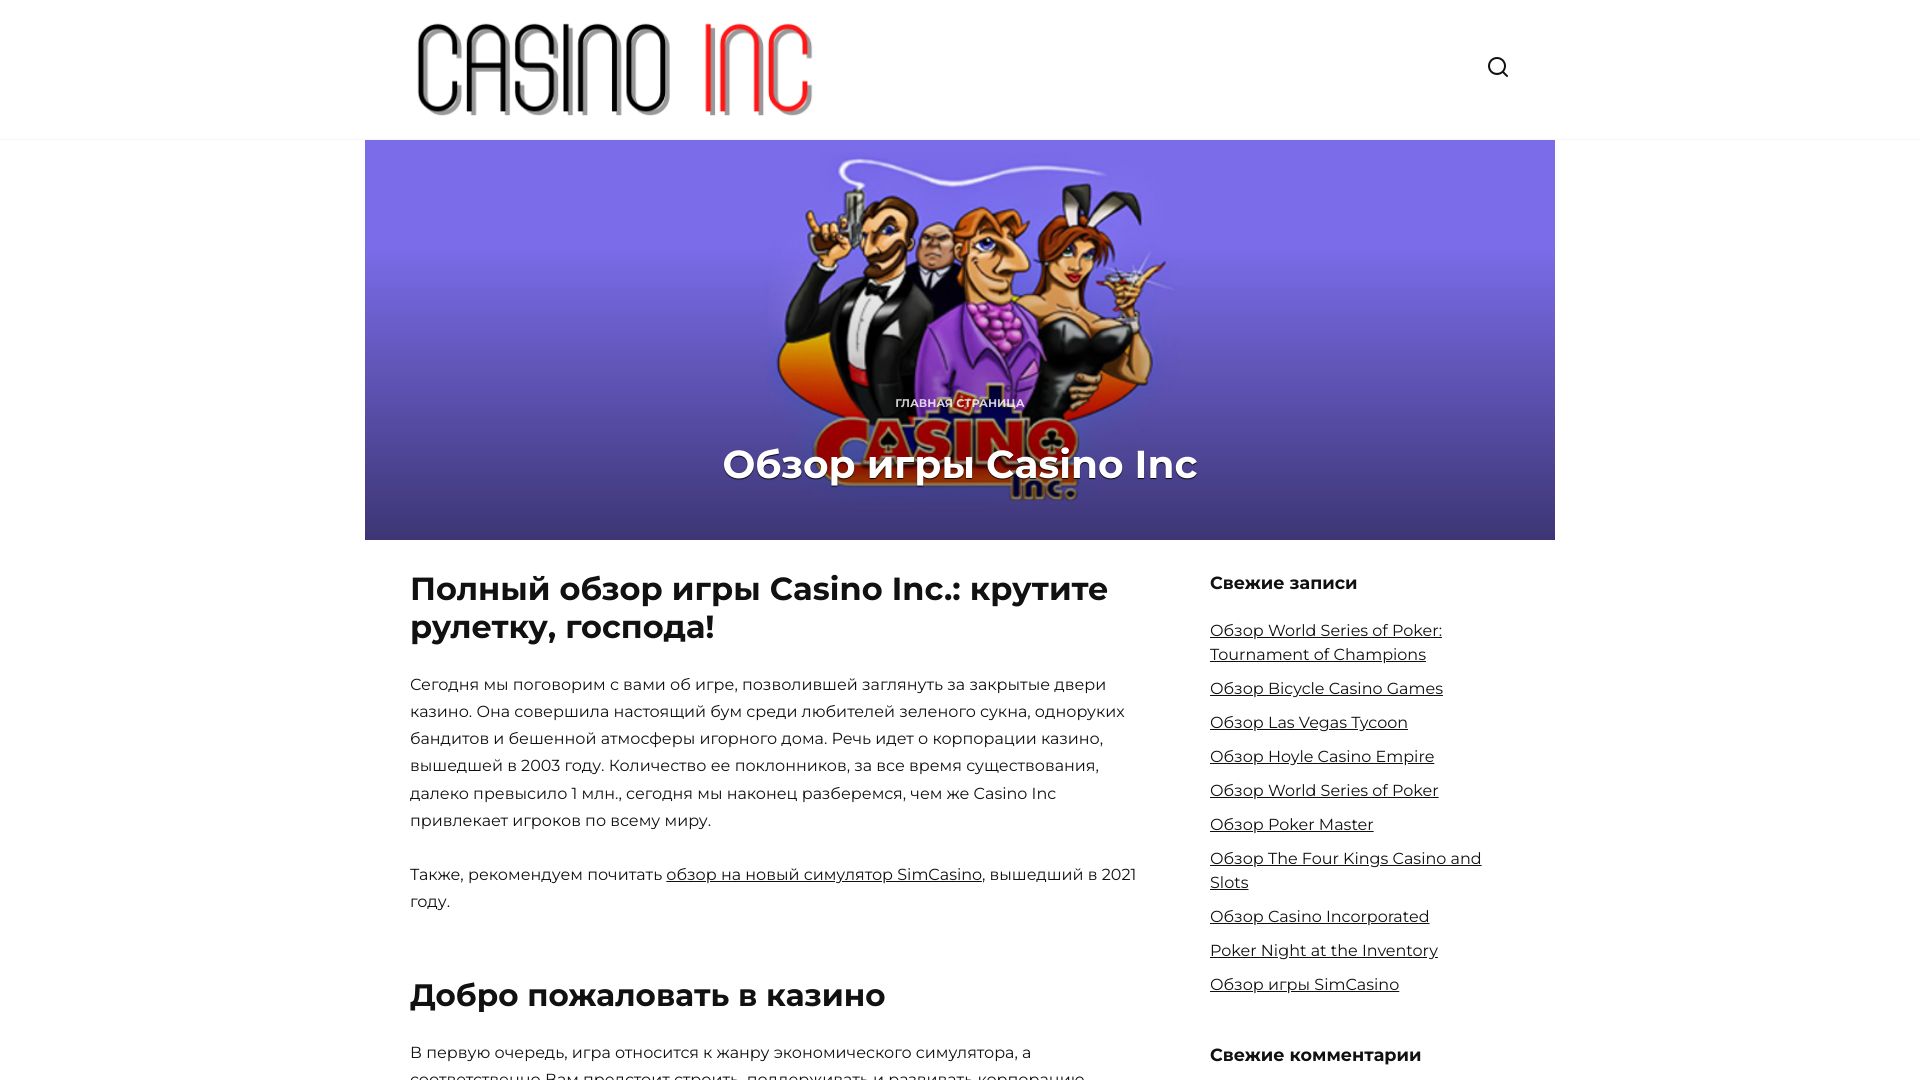 casino.forum